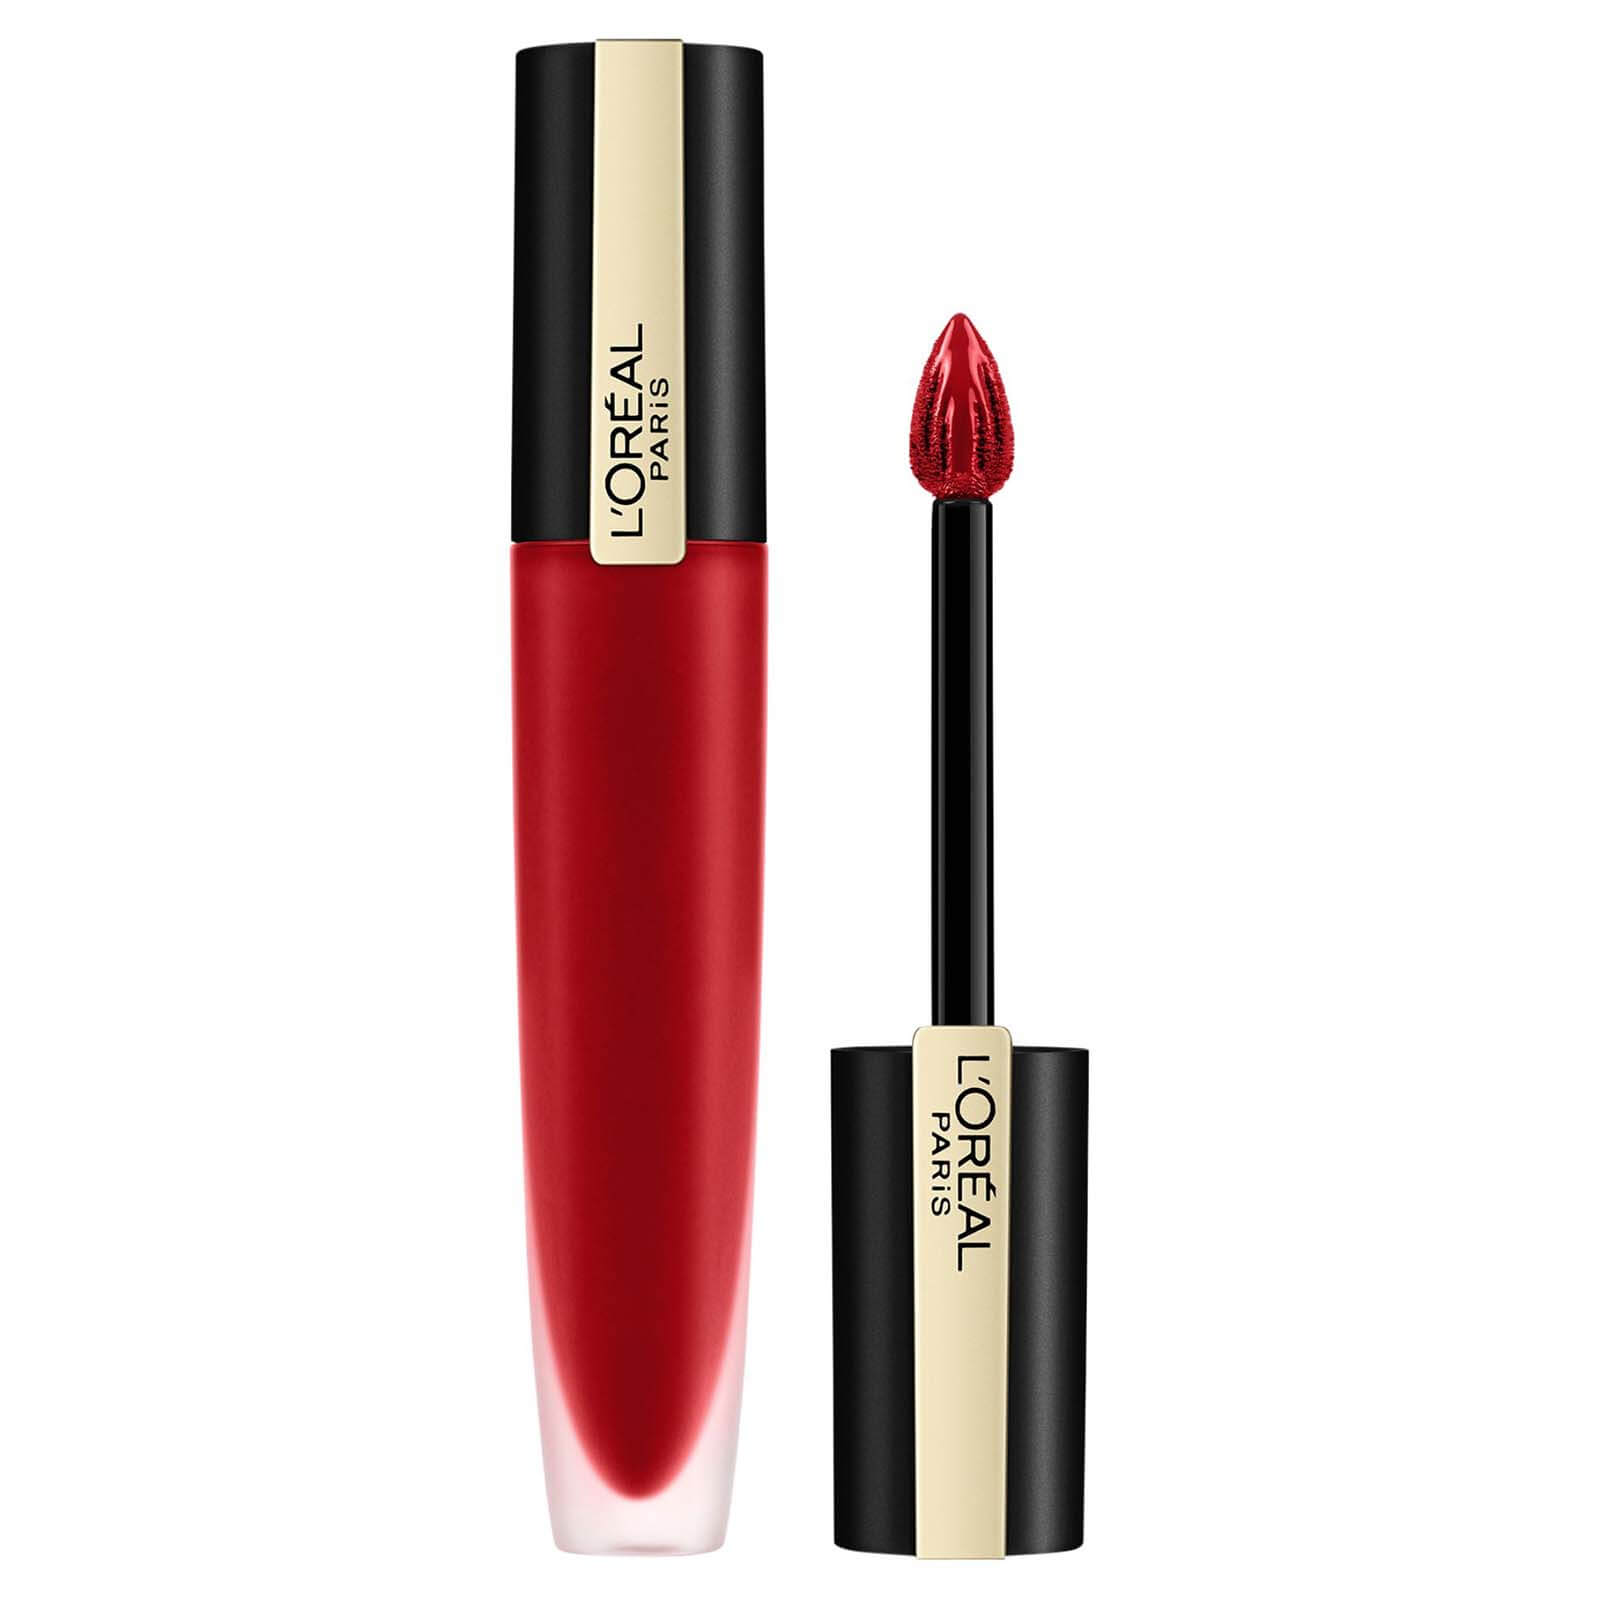 L'Oréal Paris Rouge Signature Matte Lip Ink 7ml (Various Shades) - 136 Inspi(red)